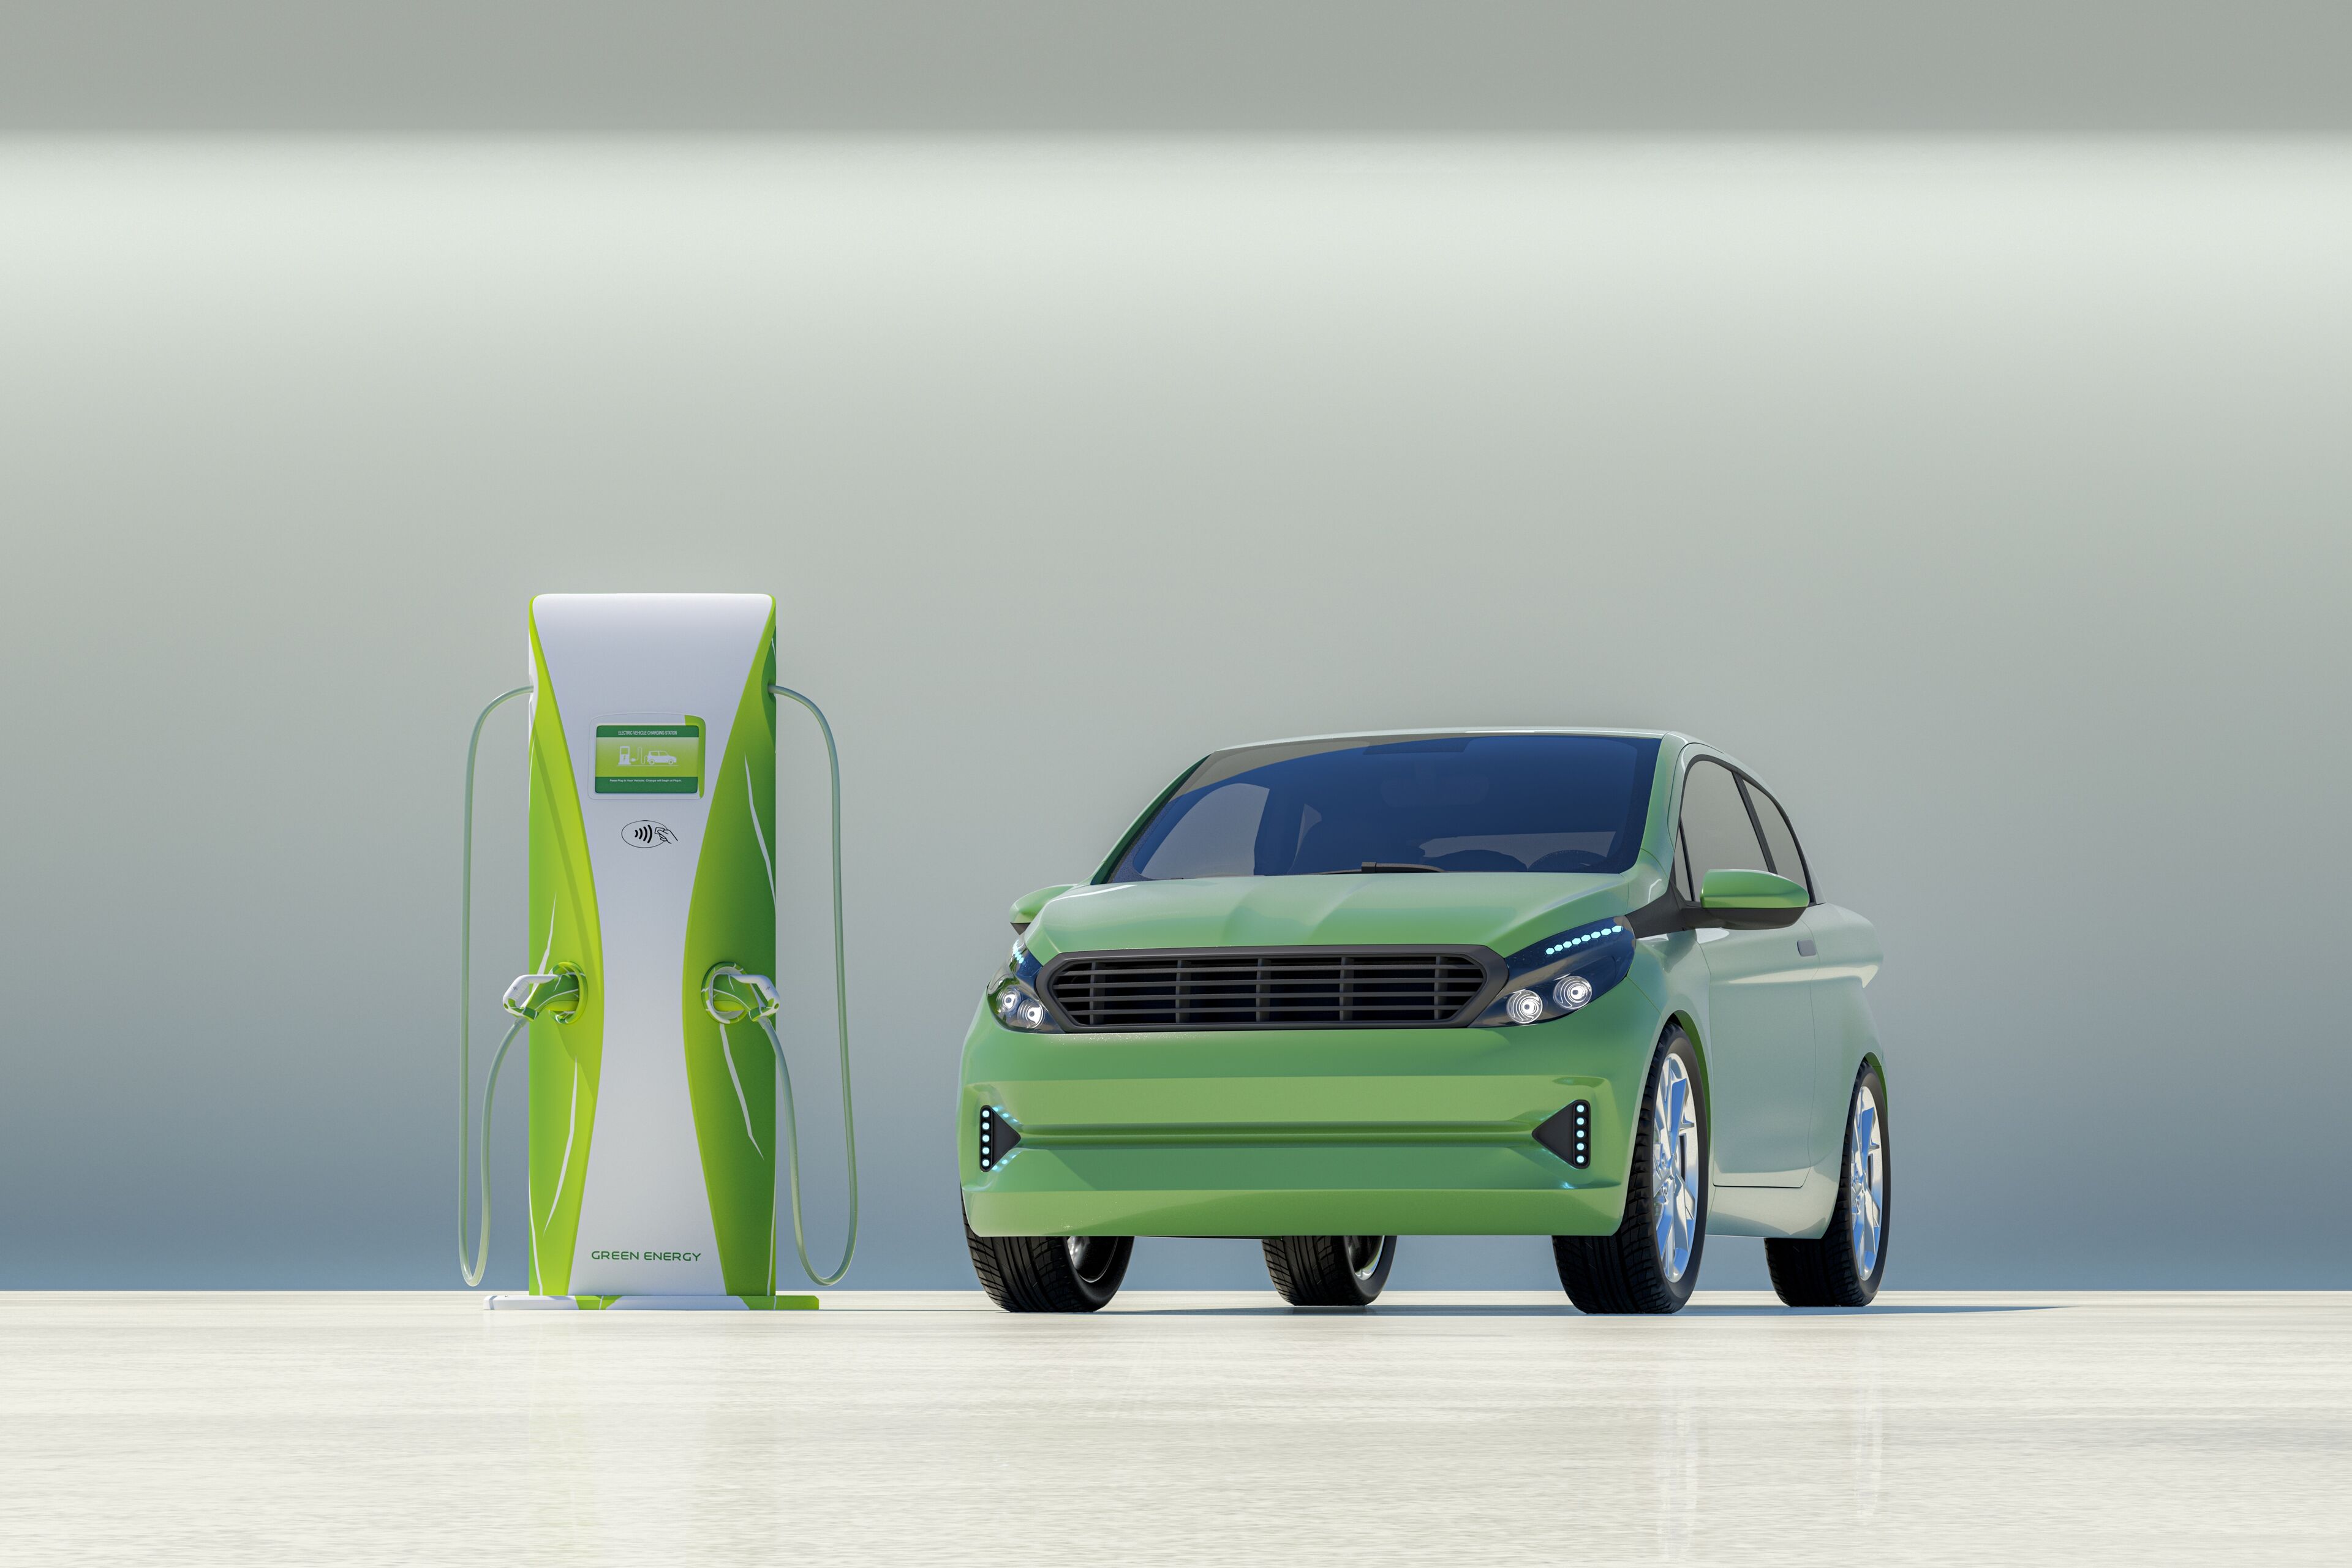 Un moderno coche eléctrico verde conectado a una estación de carga verde vibrante, simbolizando el transporte ecológico.